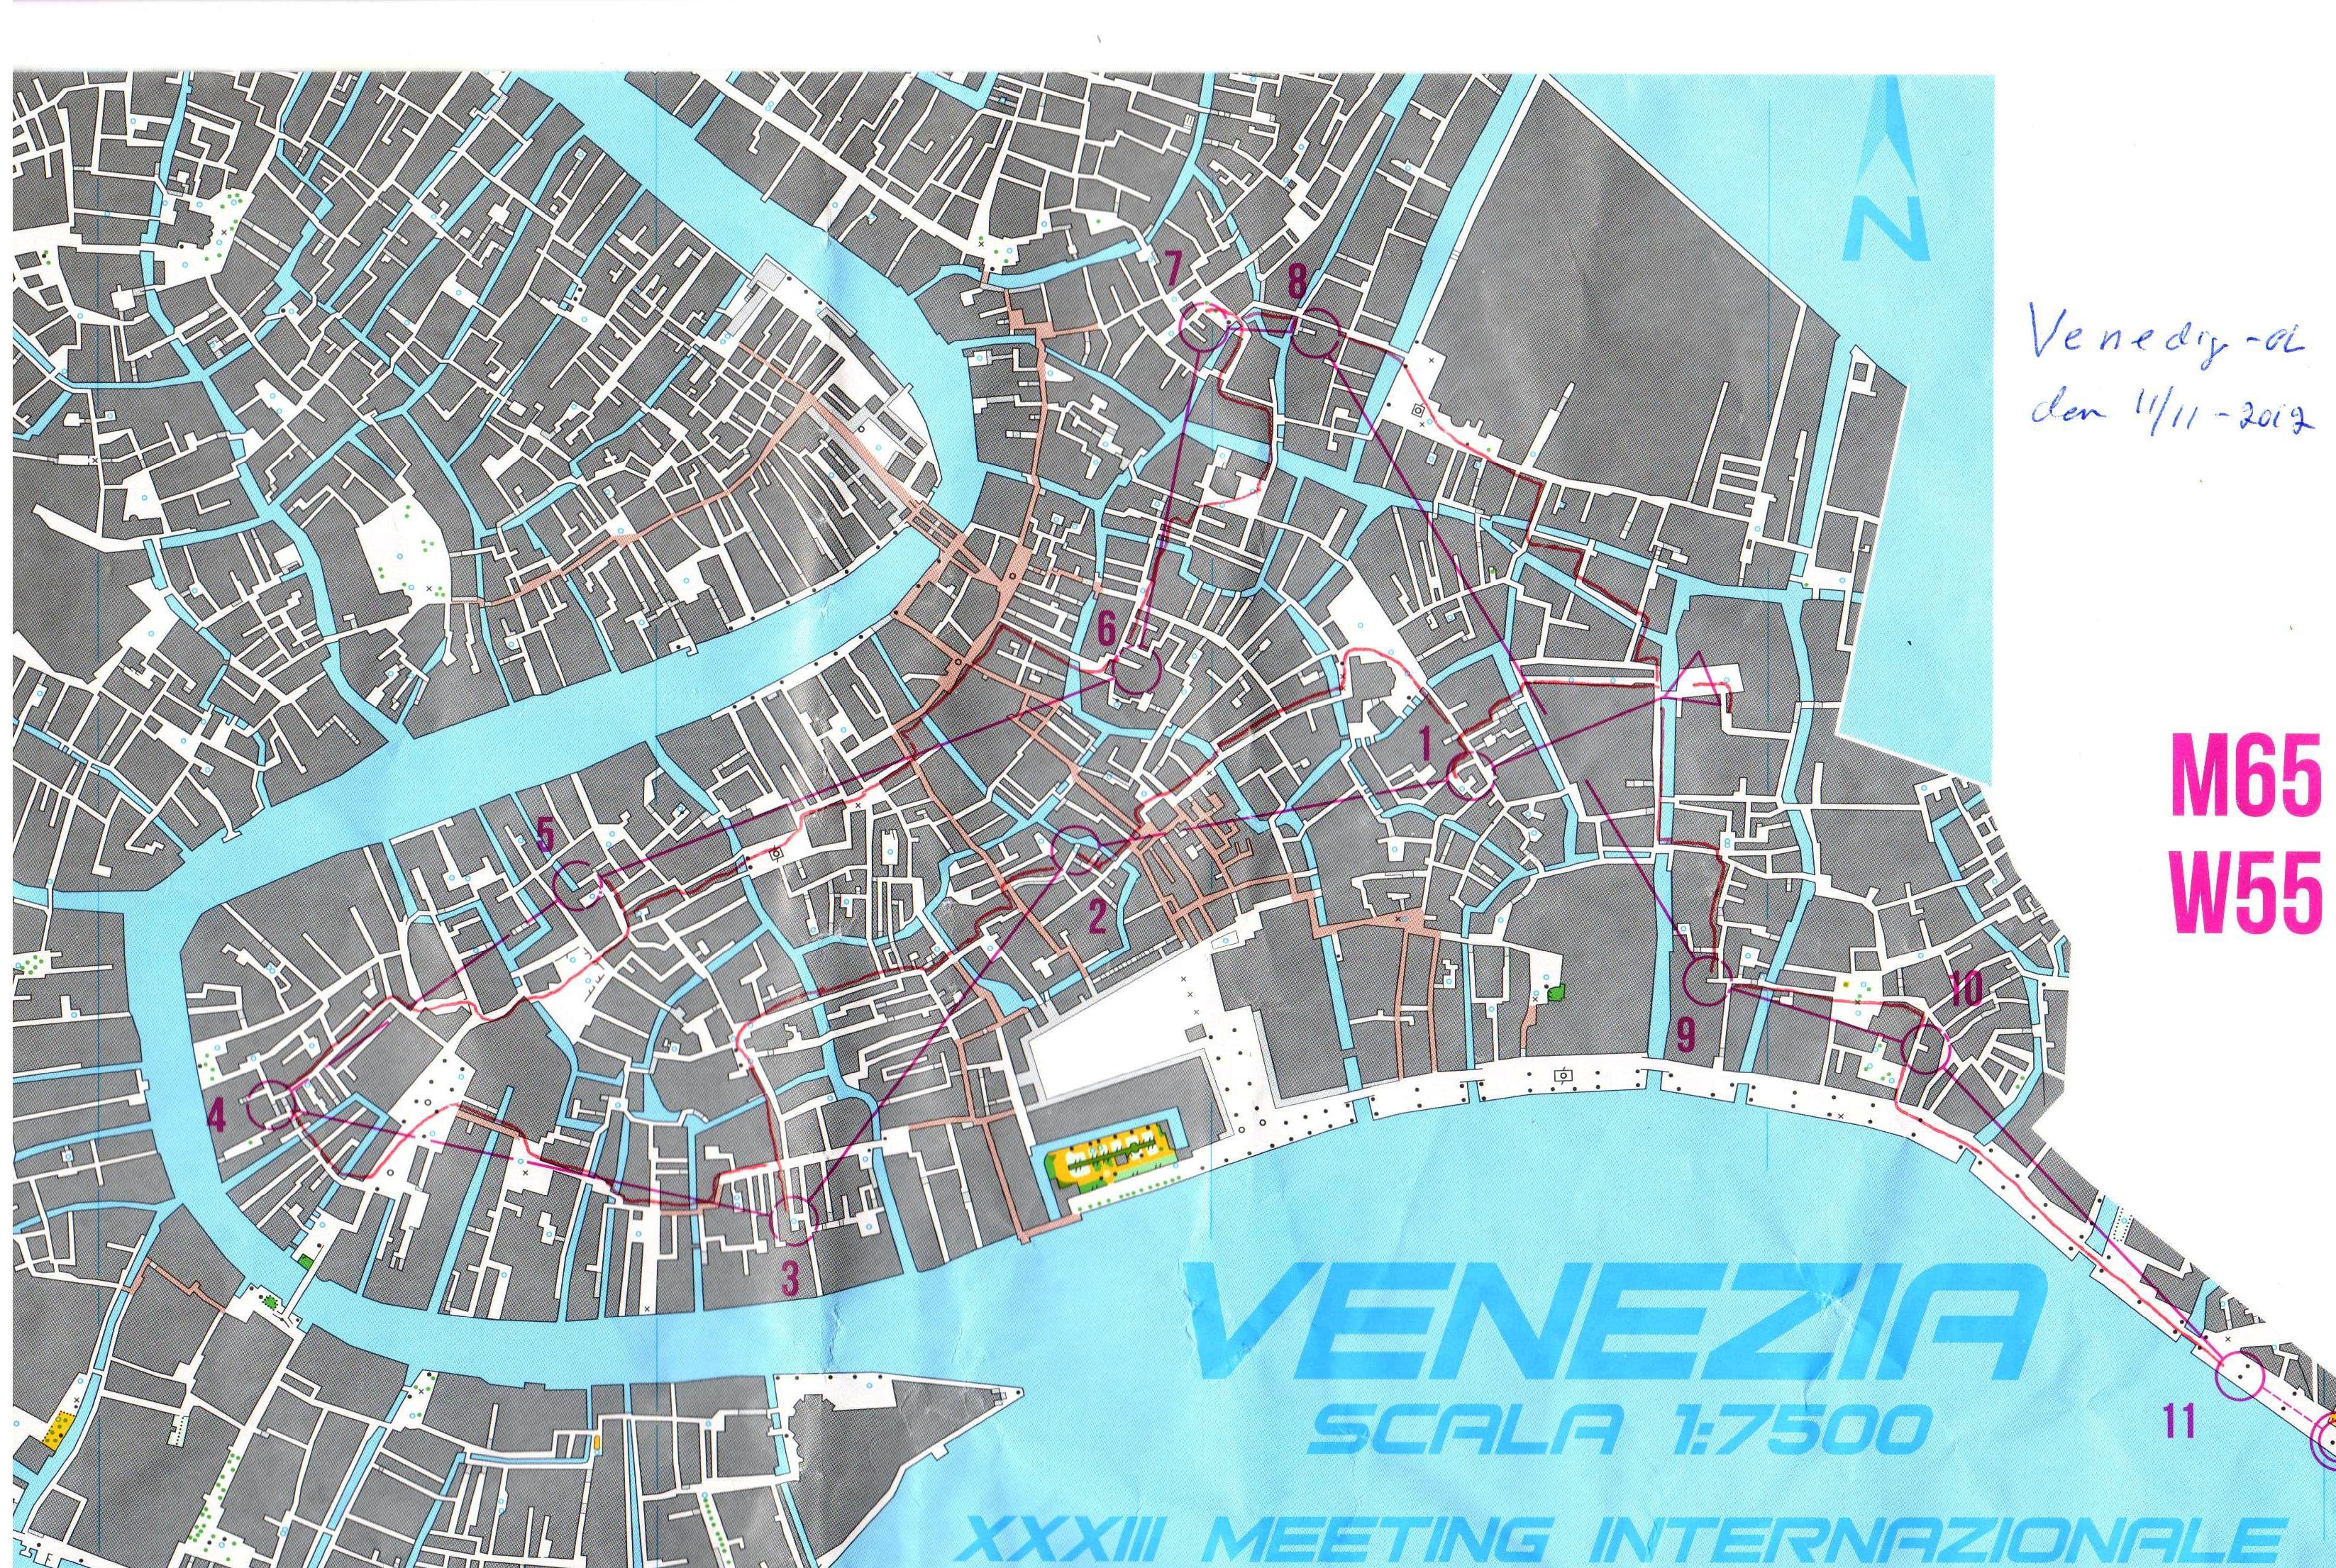 Venedigorienteringen (11-11-2012)